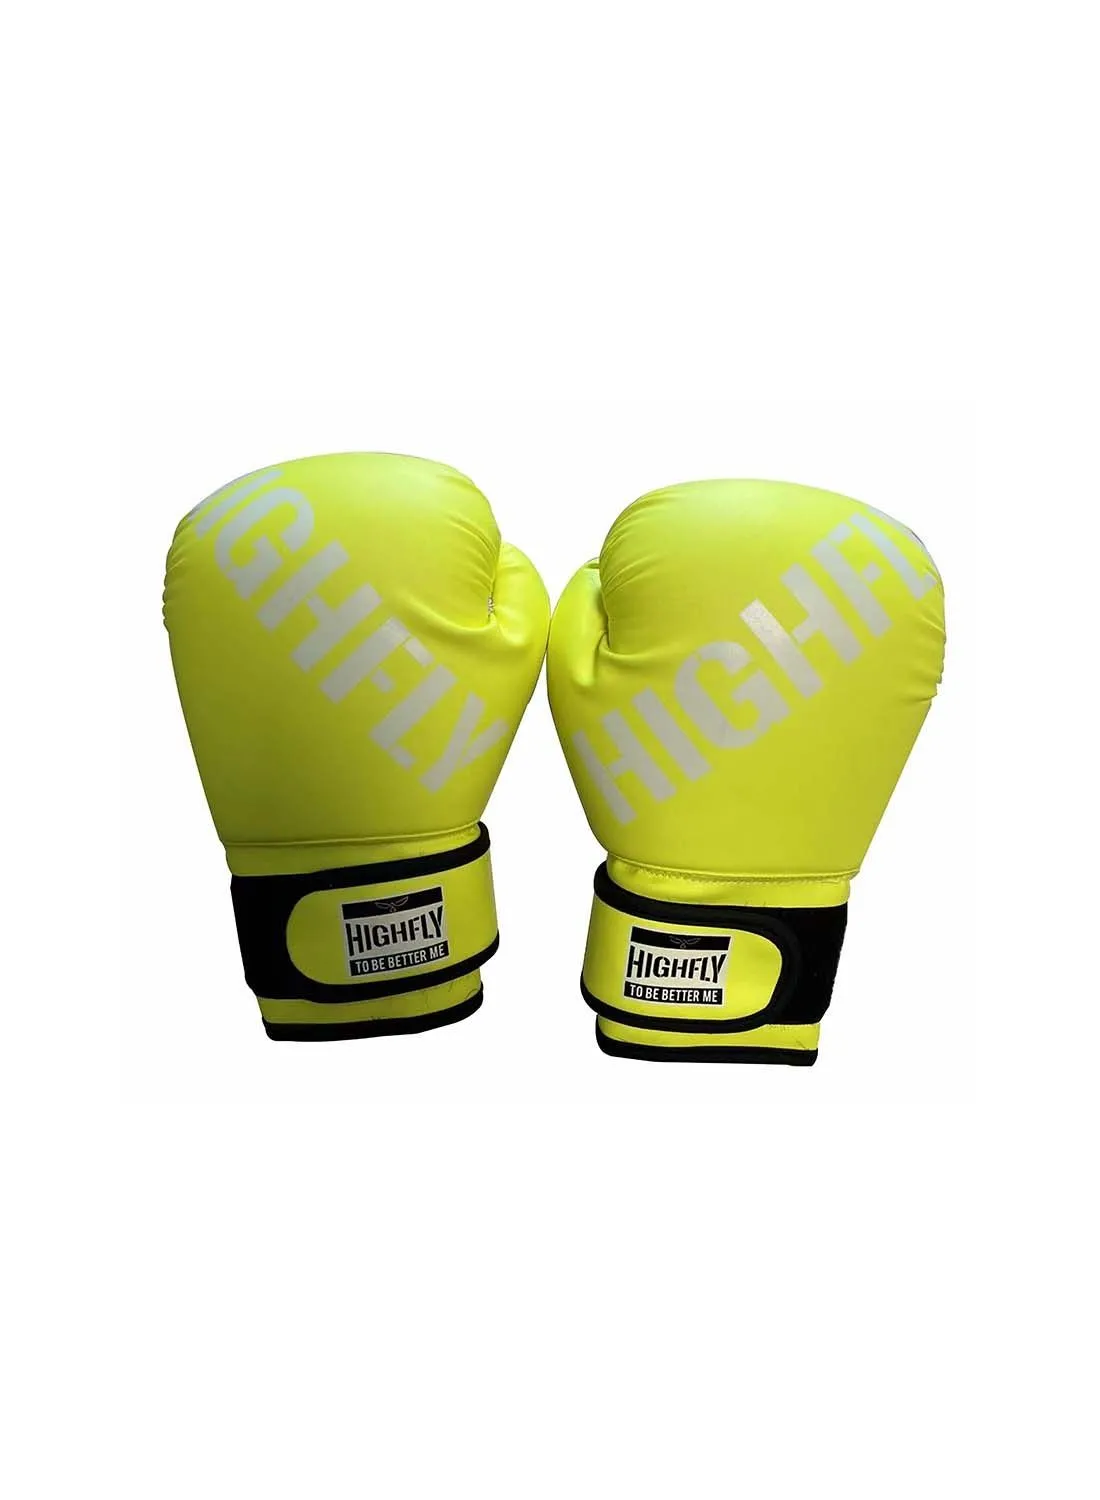 HIGHFLY 6oz Boxing Gloves